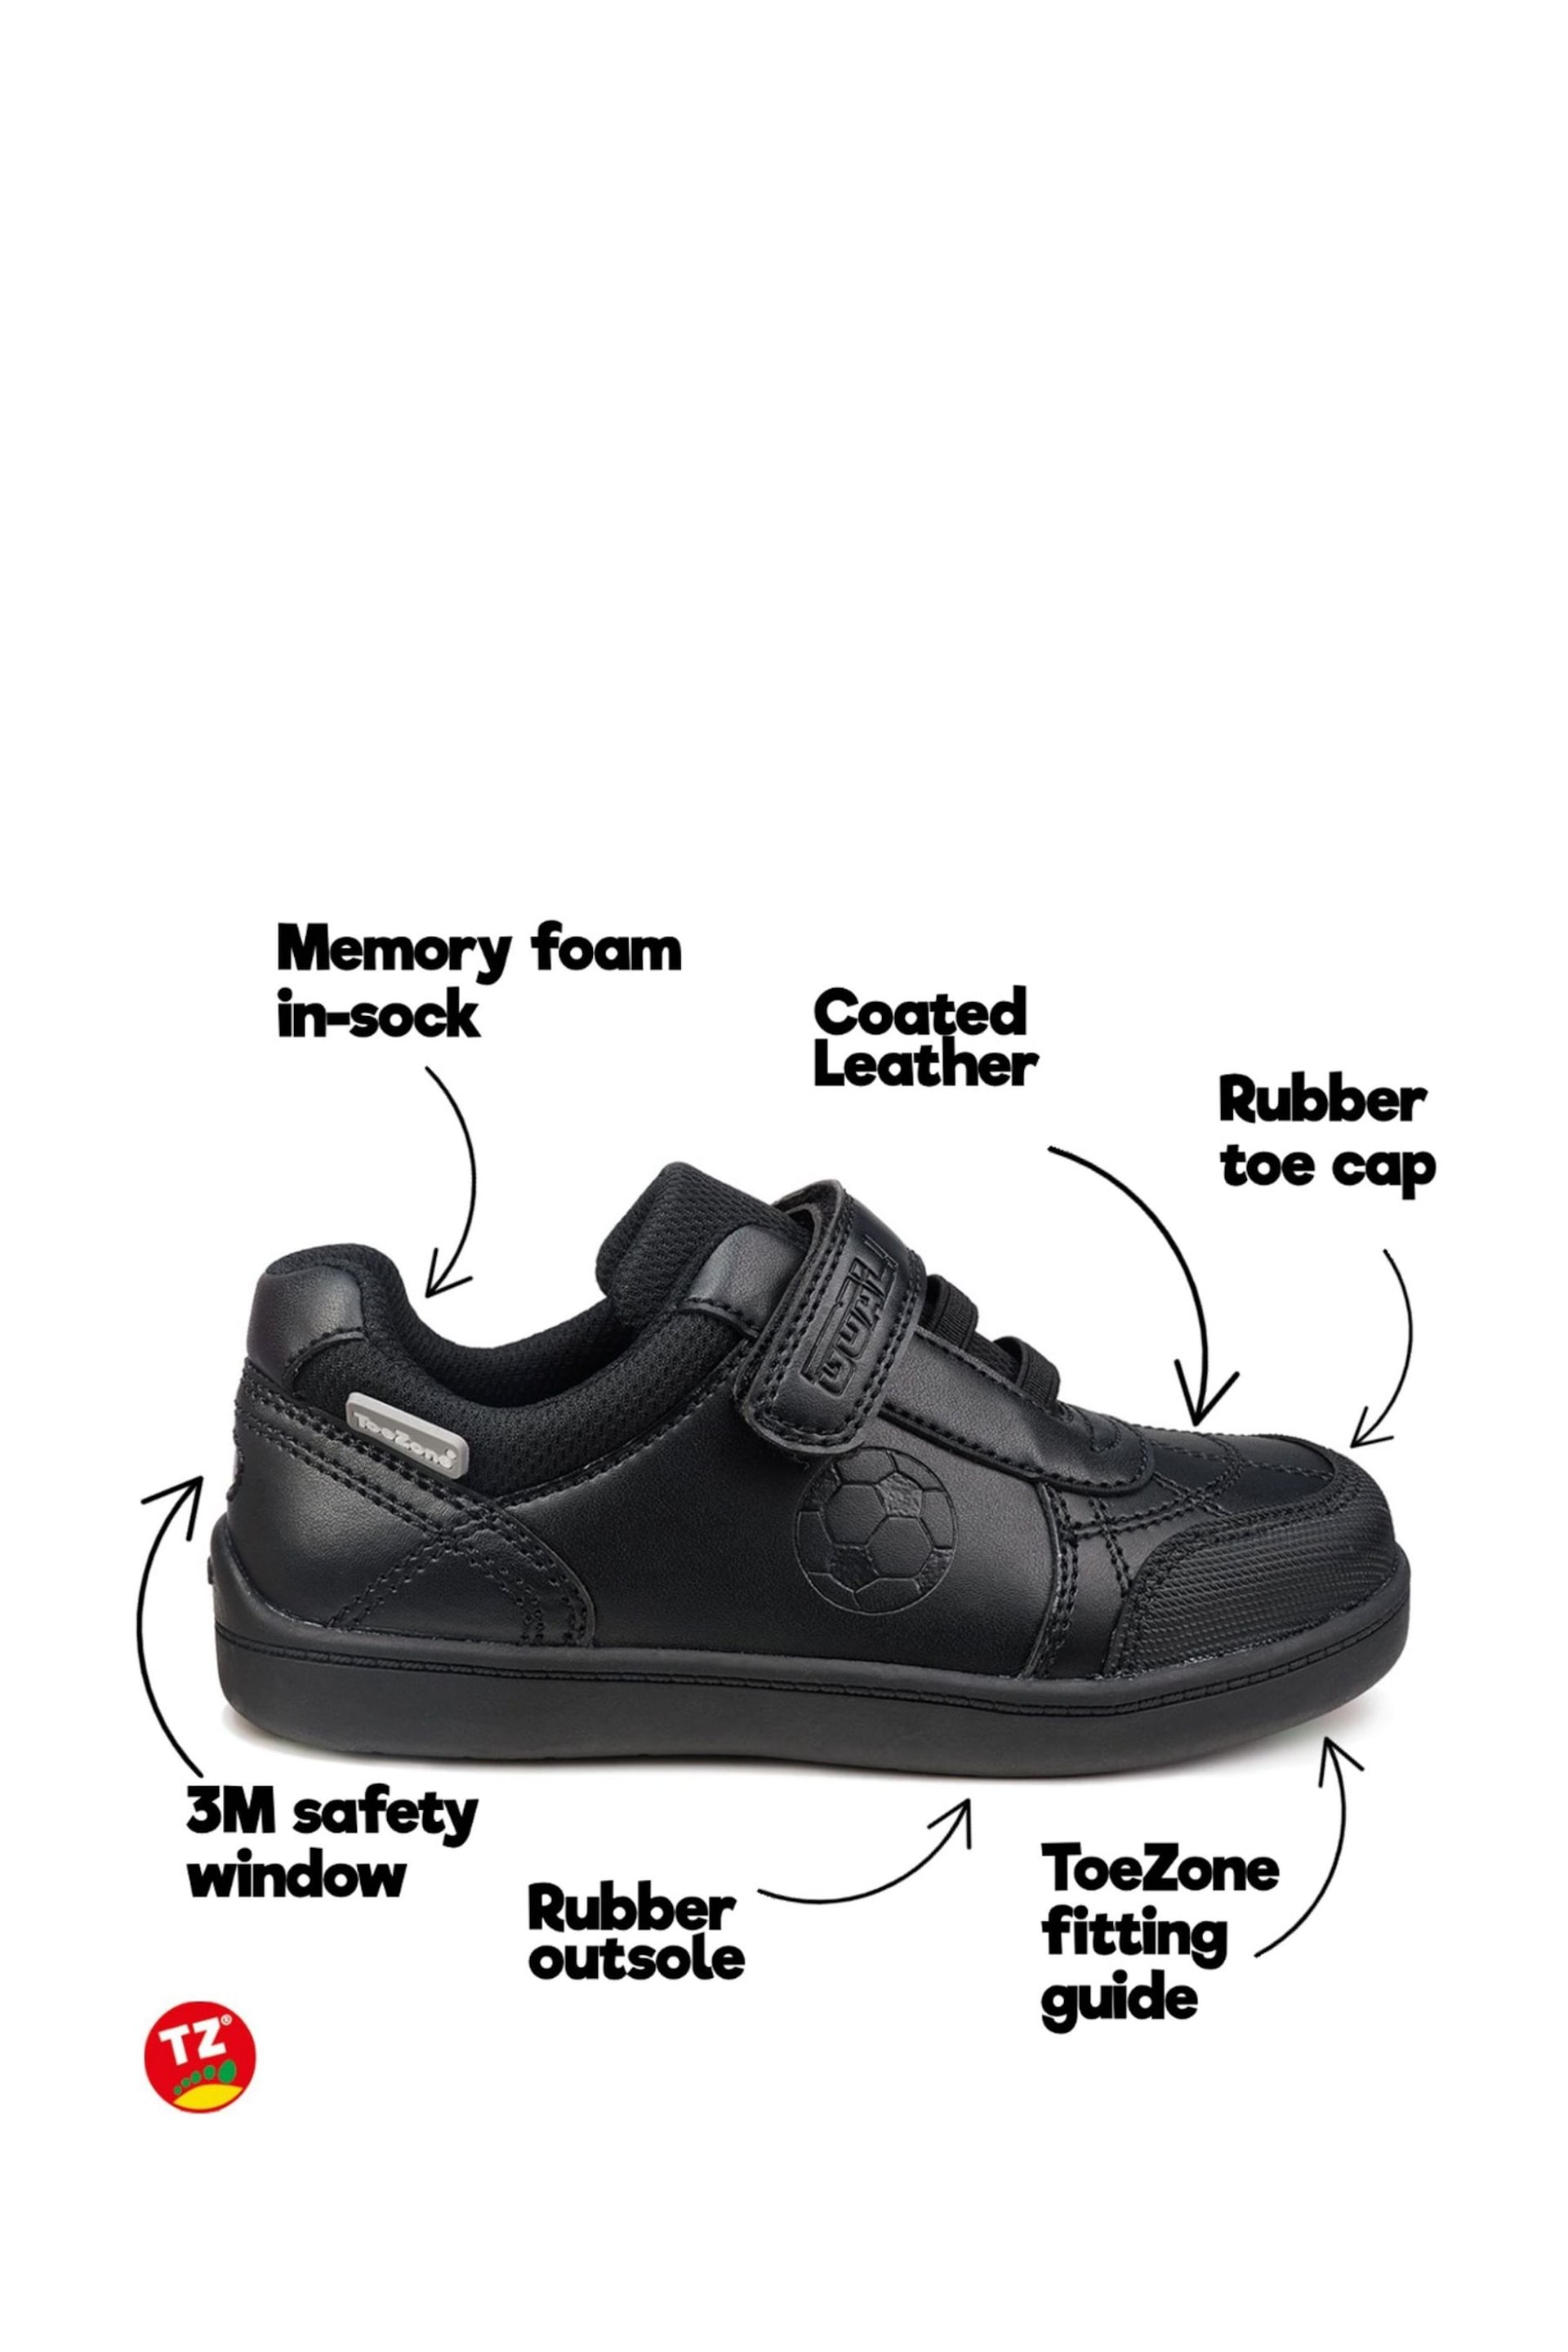 Toezone Blake Black Football Novelty Shoes - Image 7 of 7